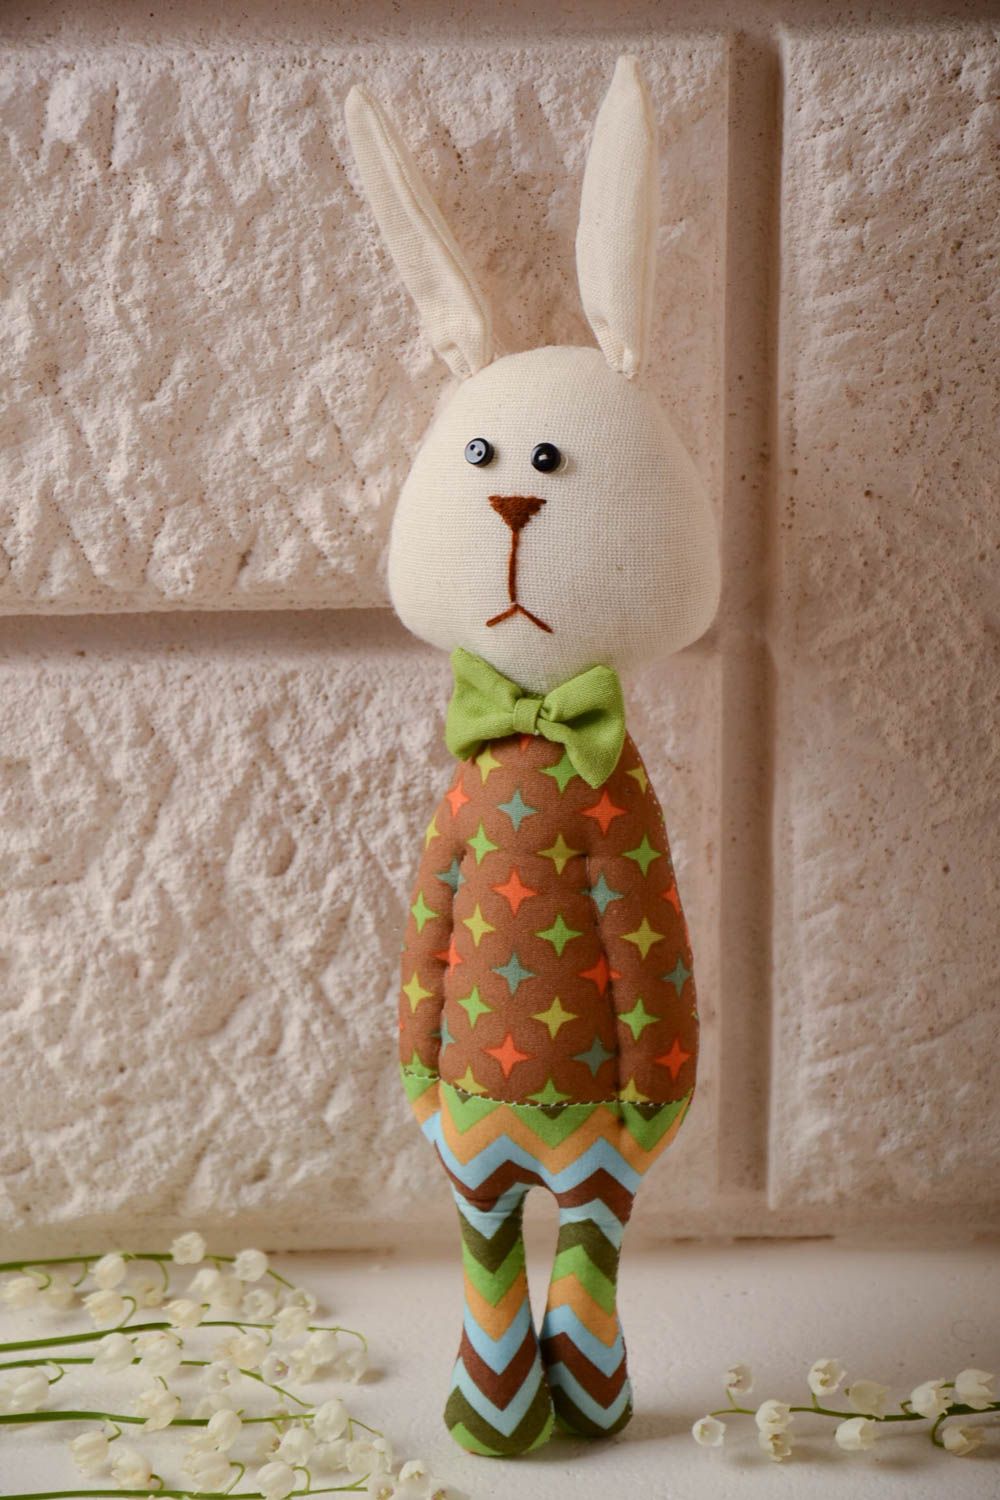 Мягкая кукла для декора дома и детей ручной работы красивая в виде зайца в пижаме фото 1